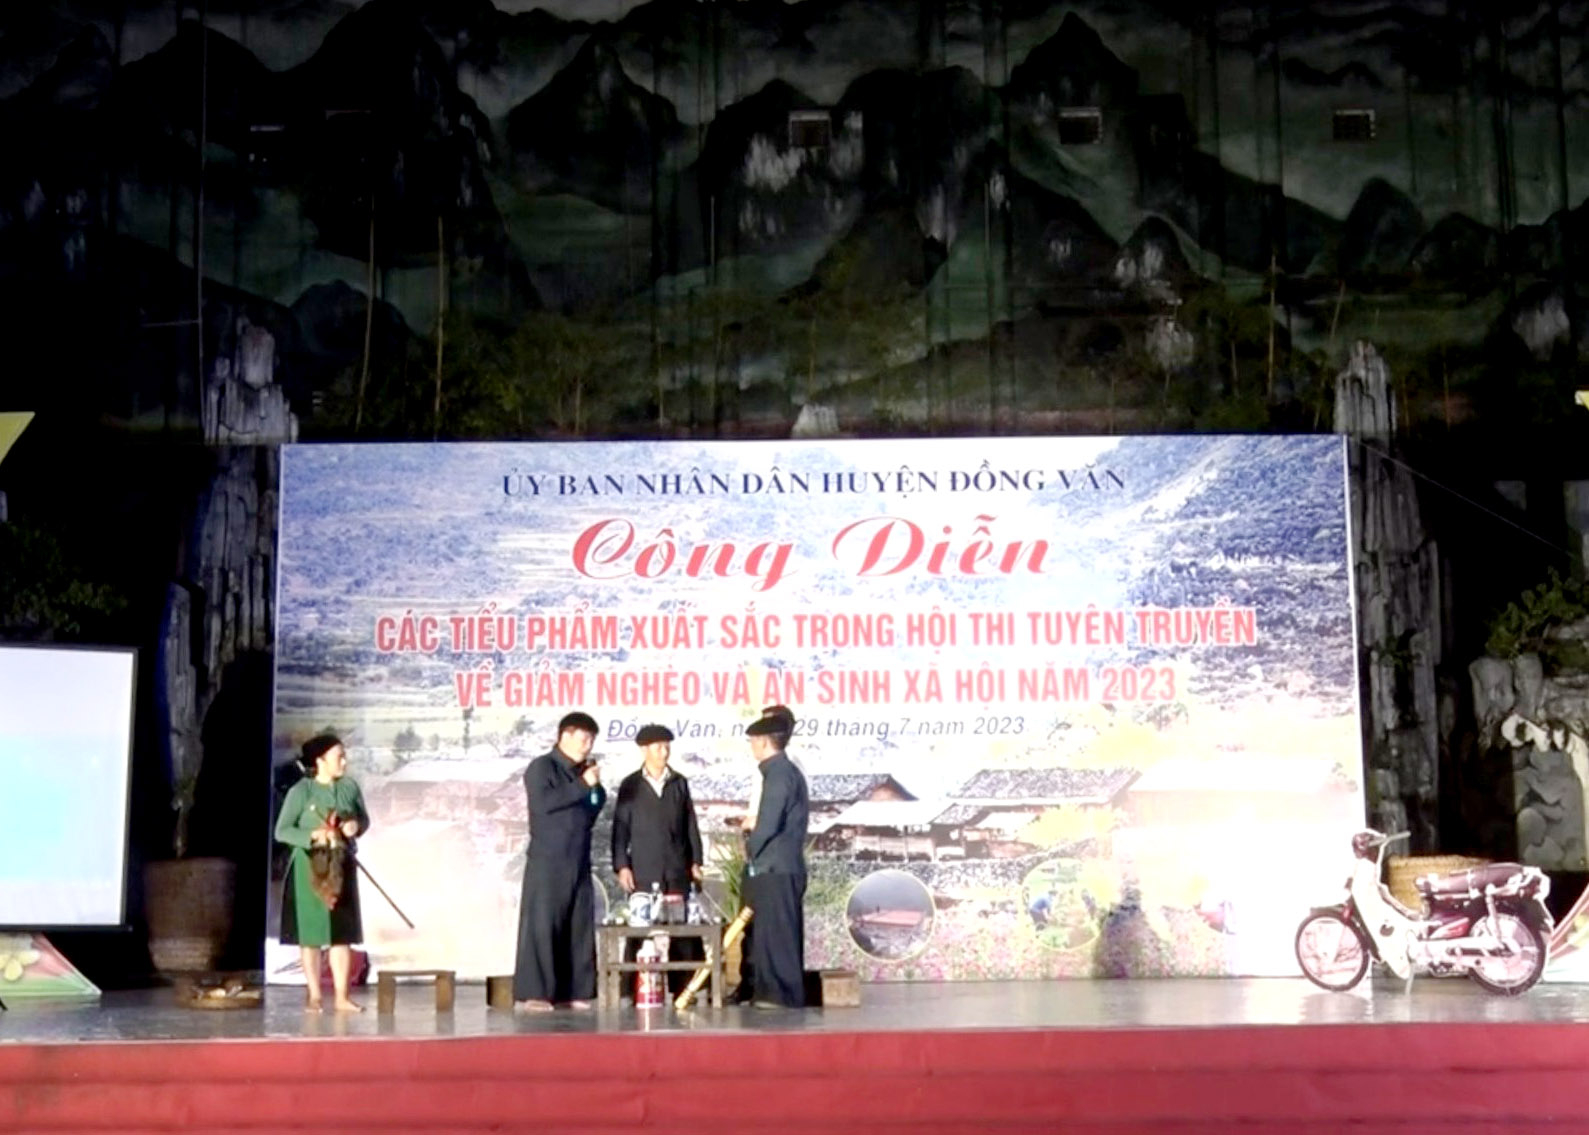 Huyện Đồng Văn tích cực tuyên truyền về giảm nghèo và ASXH thông qua hình thức sân khấu hóa.